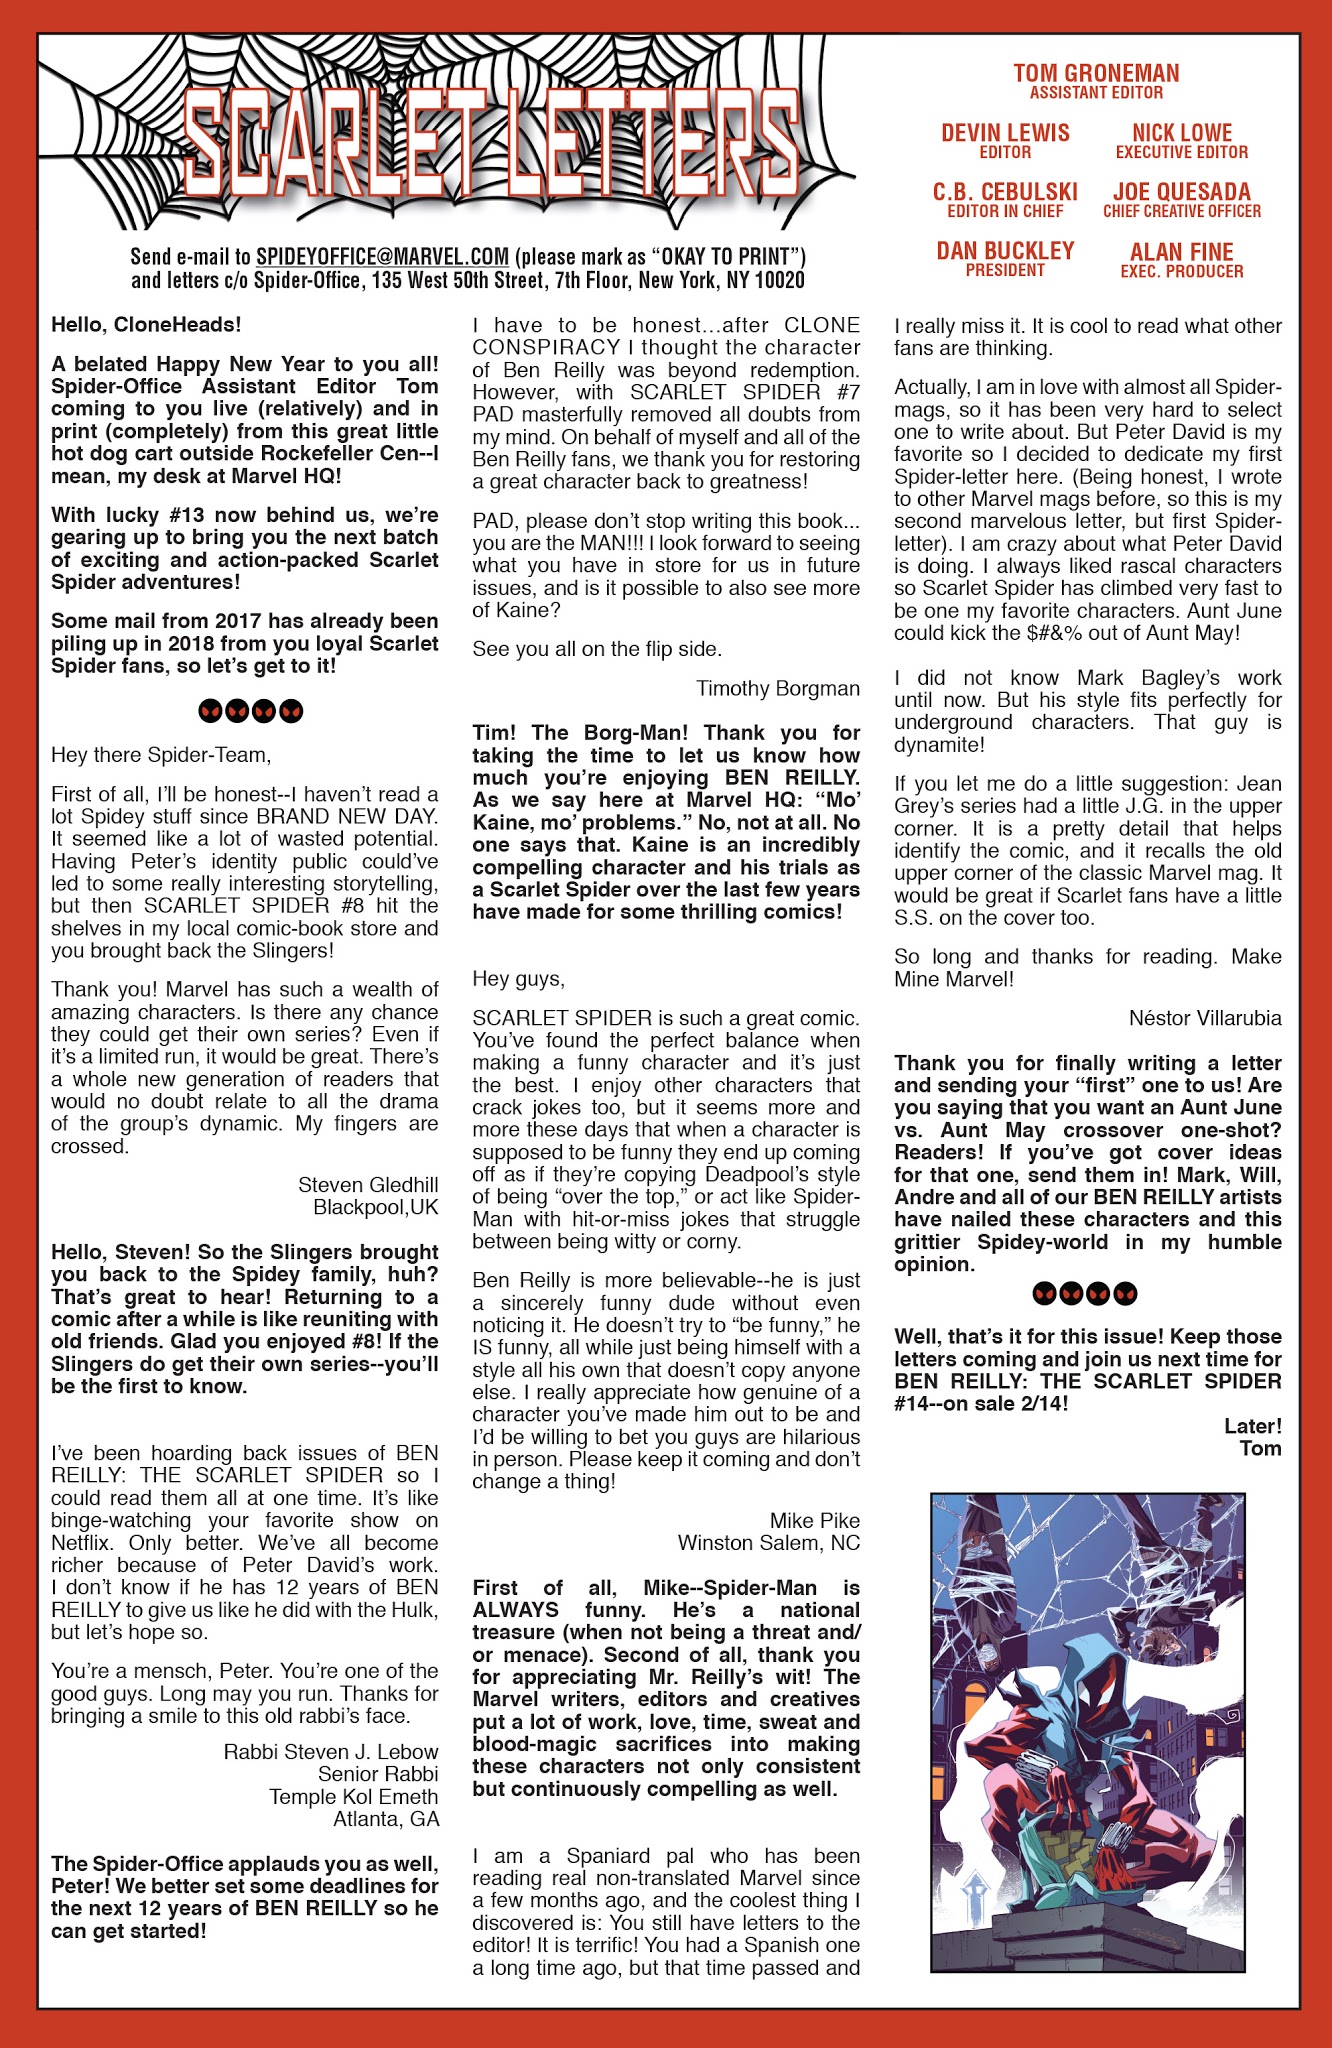 Read online Ben Reilly: Scarlet Spider comic -  Issue #13 - 23